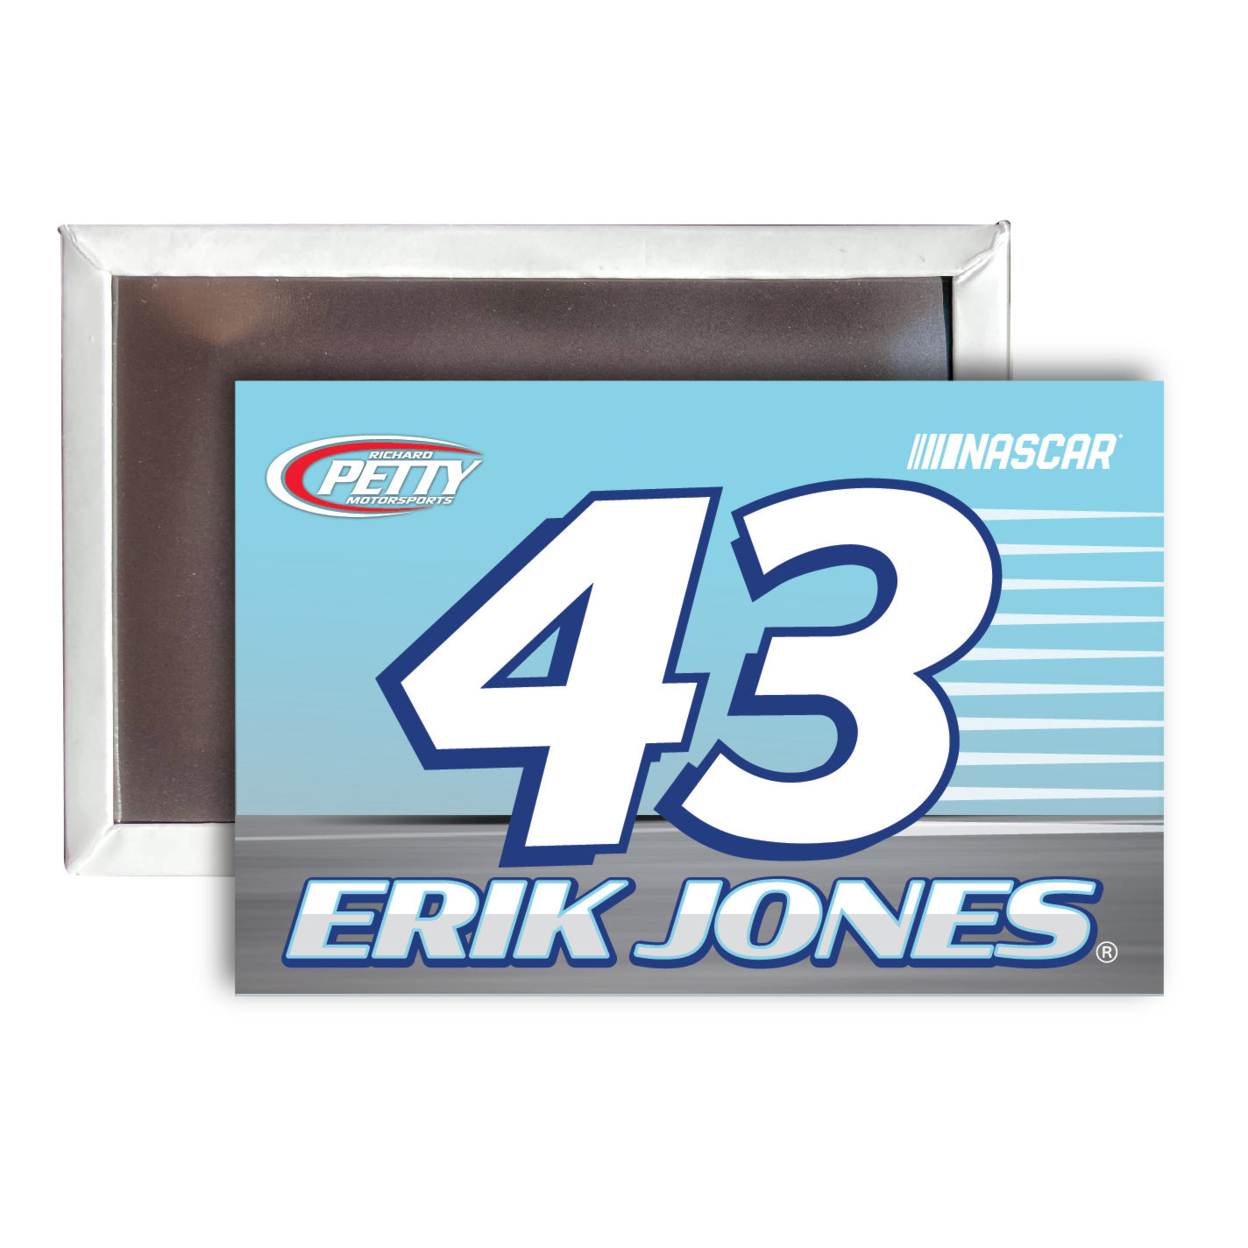 Erik Jones NASCAR #43 Fridge Magnet 4-Pack